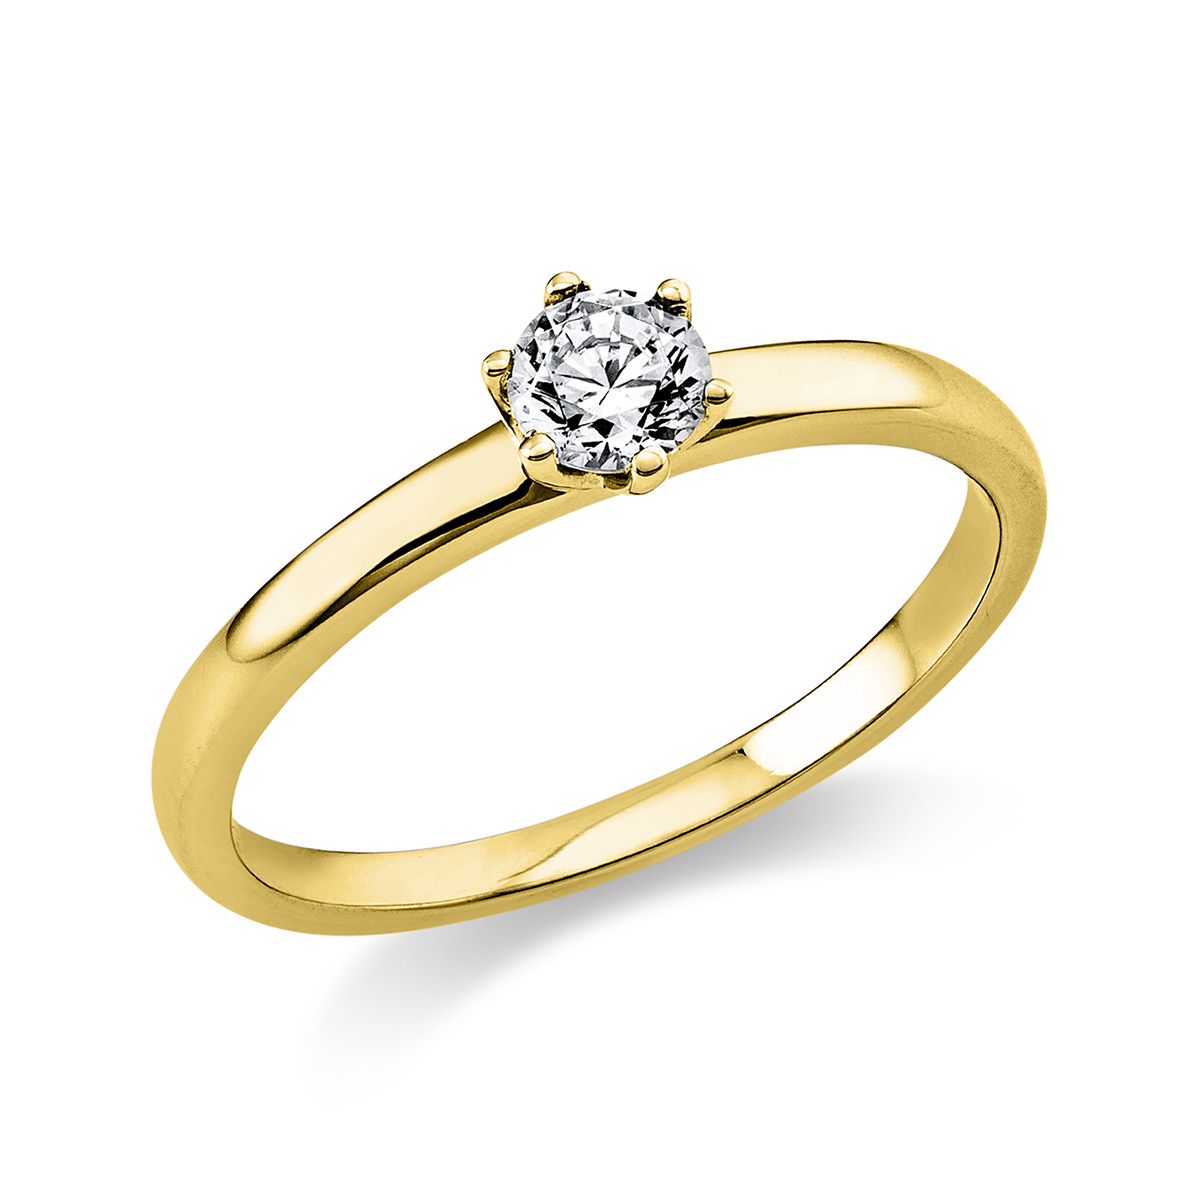 Solitär-Ring 6-Griff-Fassung 585/14K Gelbgold, Diamant 0.25 ct.